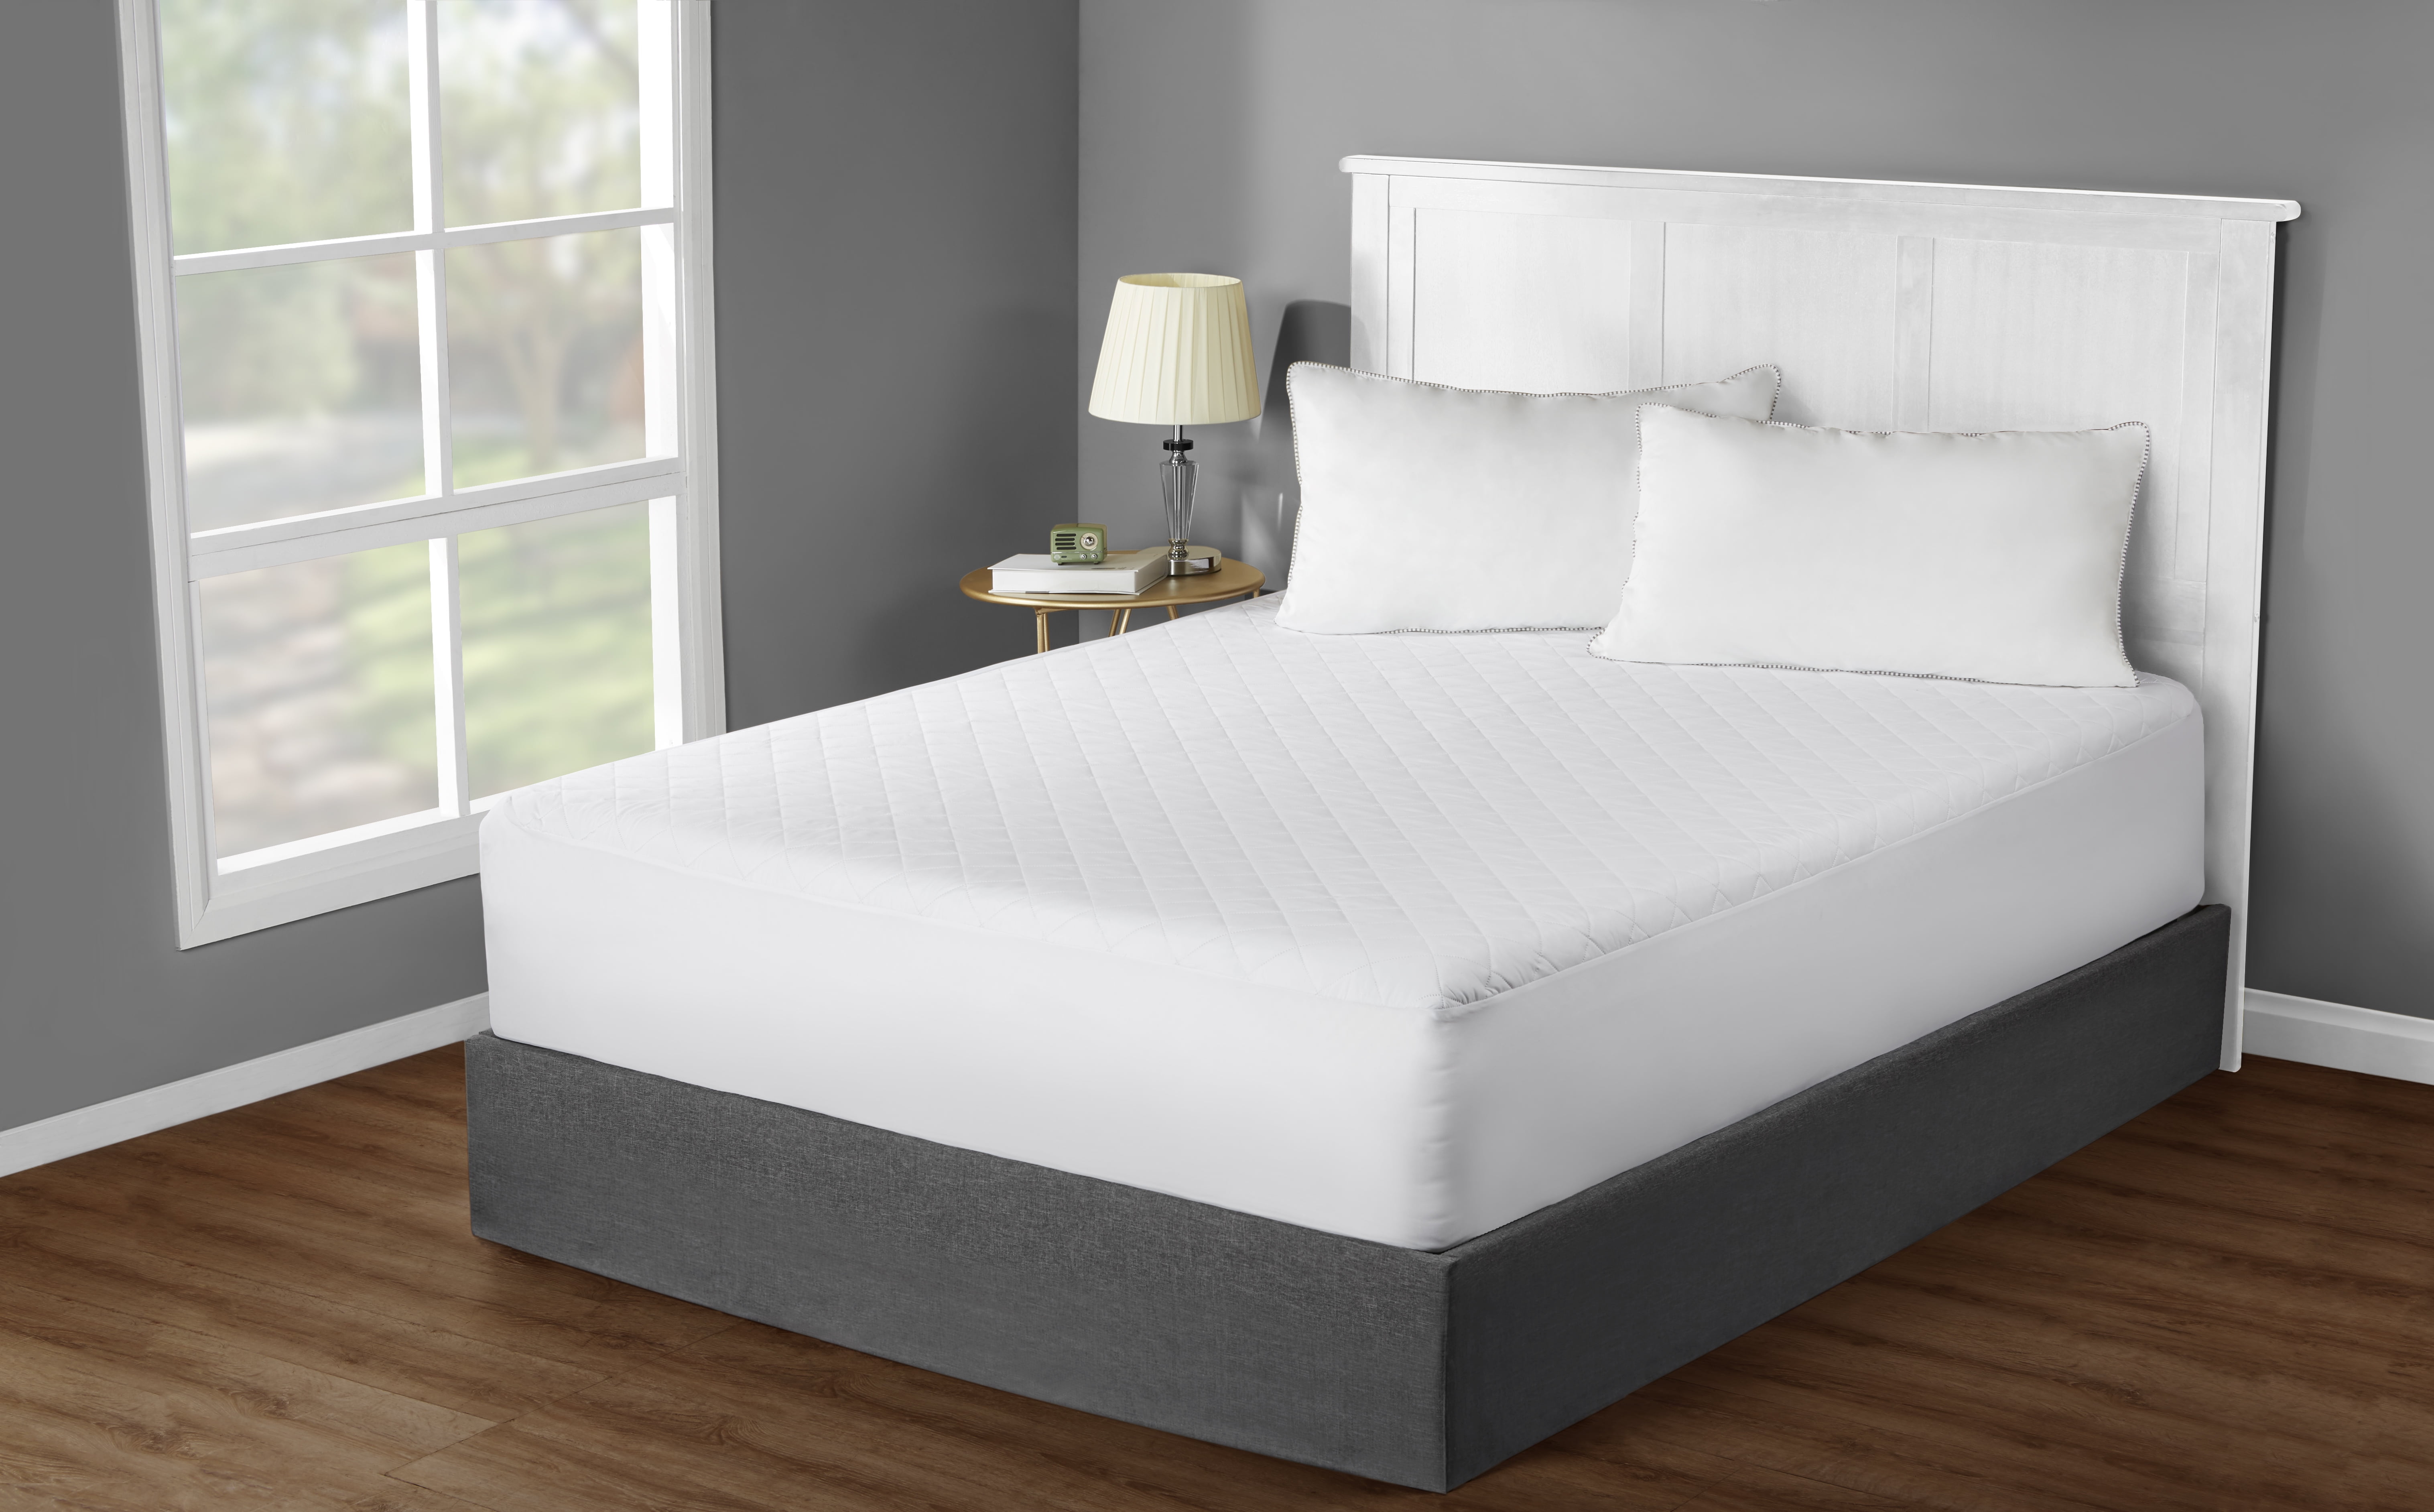 soft padding on top of mattress